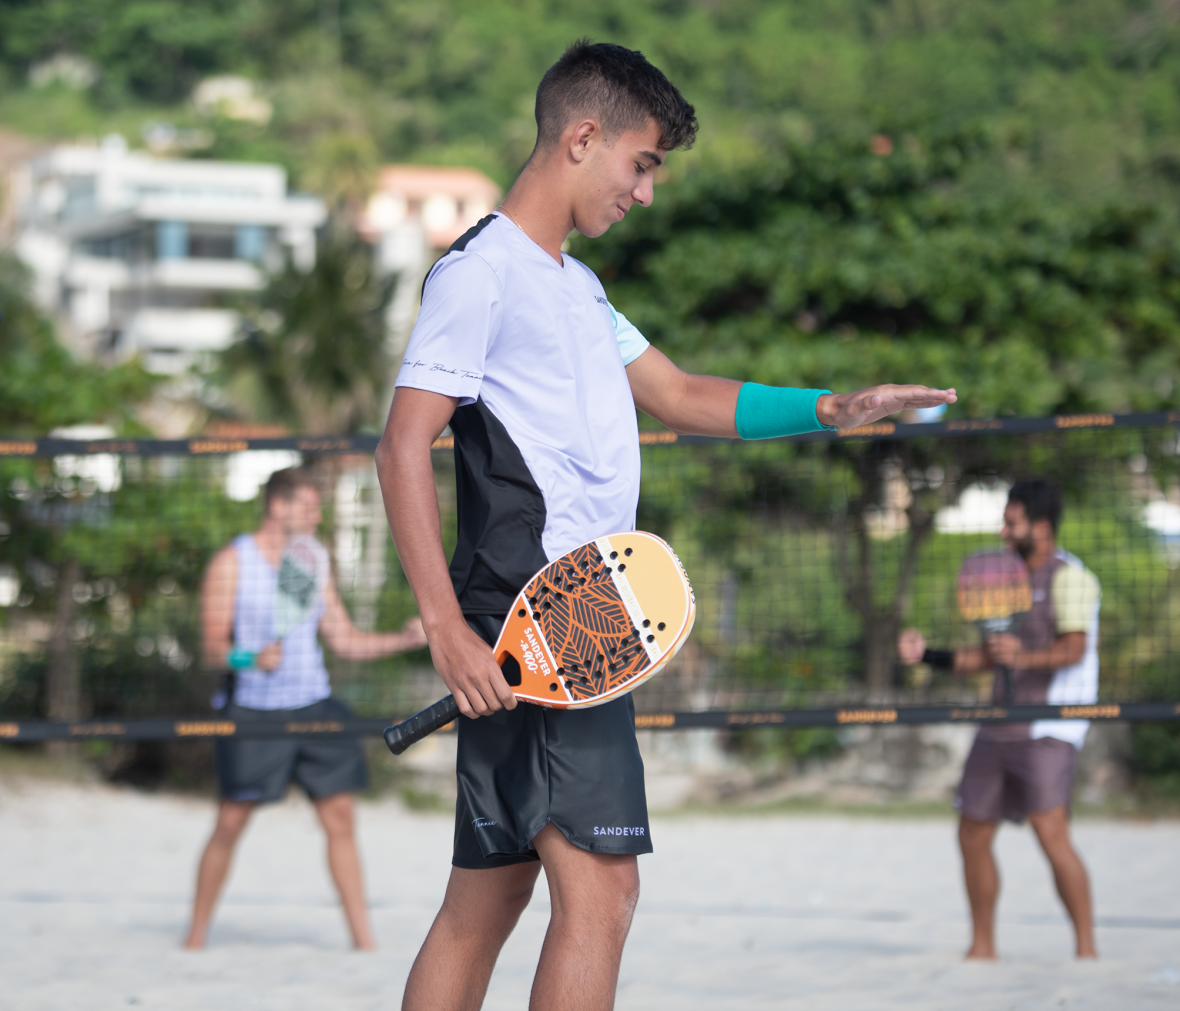 Primi passi nel Beach Tennis | DECATHLON